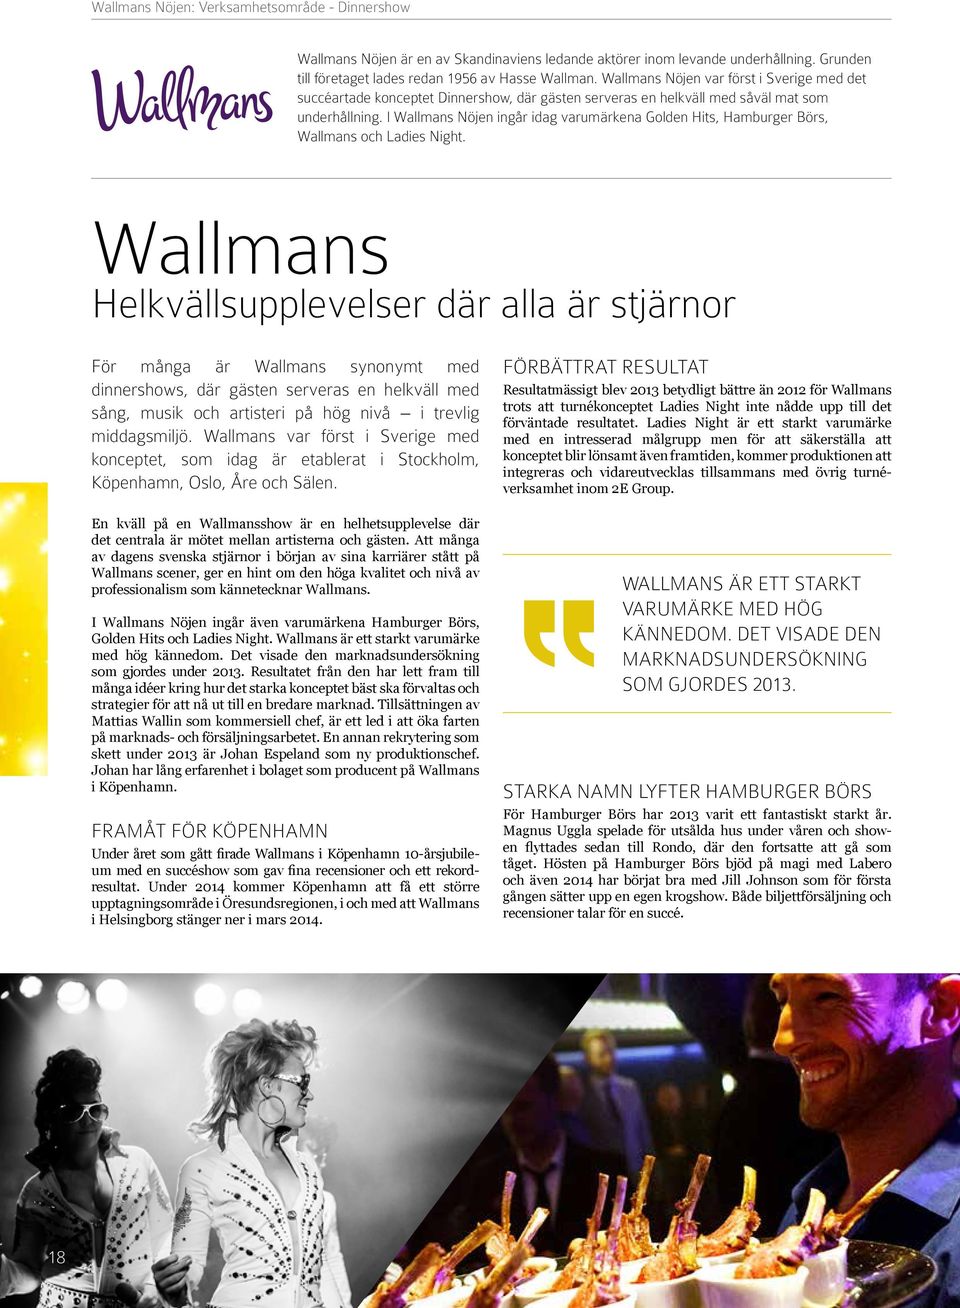 I Wallmans Nöjen ingår idag varumärkena Golden Hits, Hamburger Börs, Wallmans och Ladies Night.